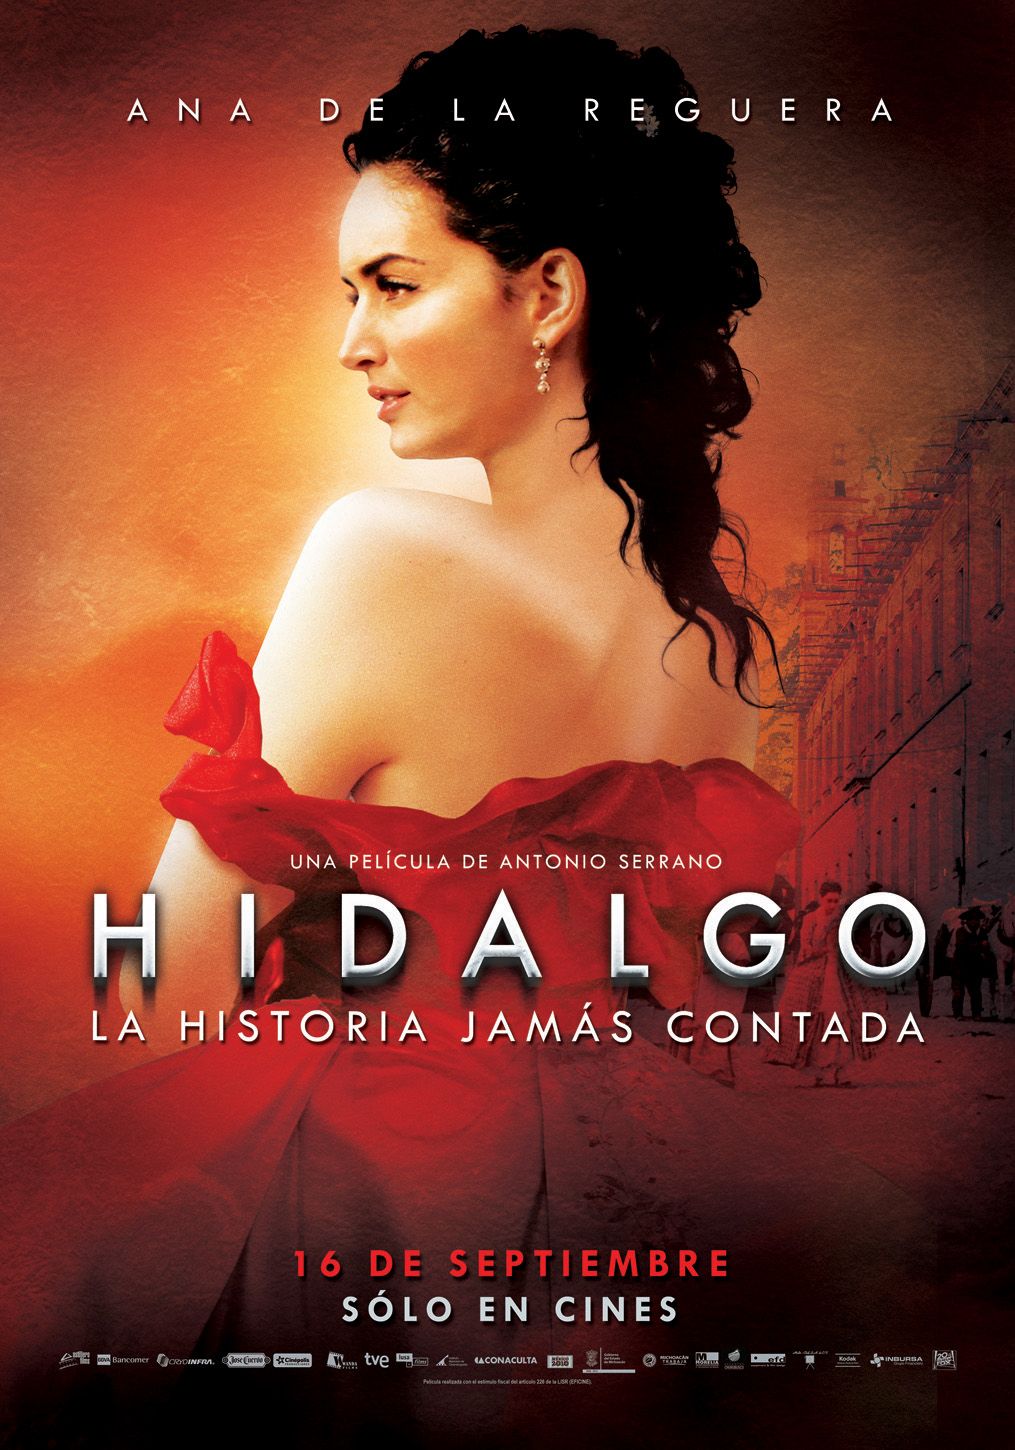 Extra Large Movie Poster Image for Hidalgo - La historia jamás contada. (#2 of 4)